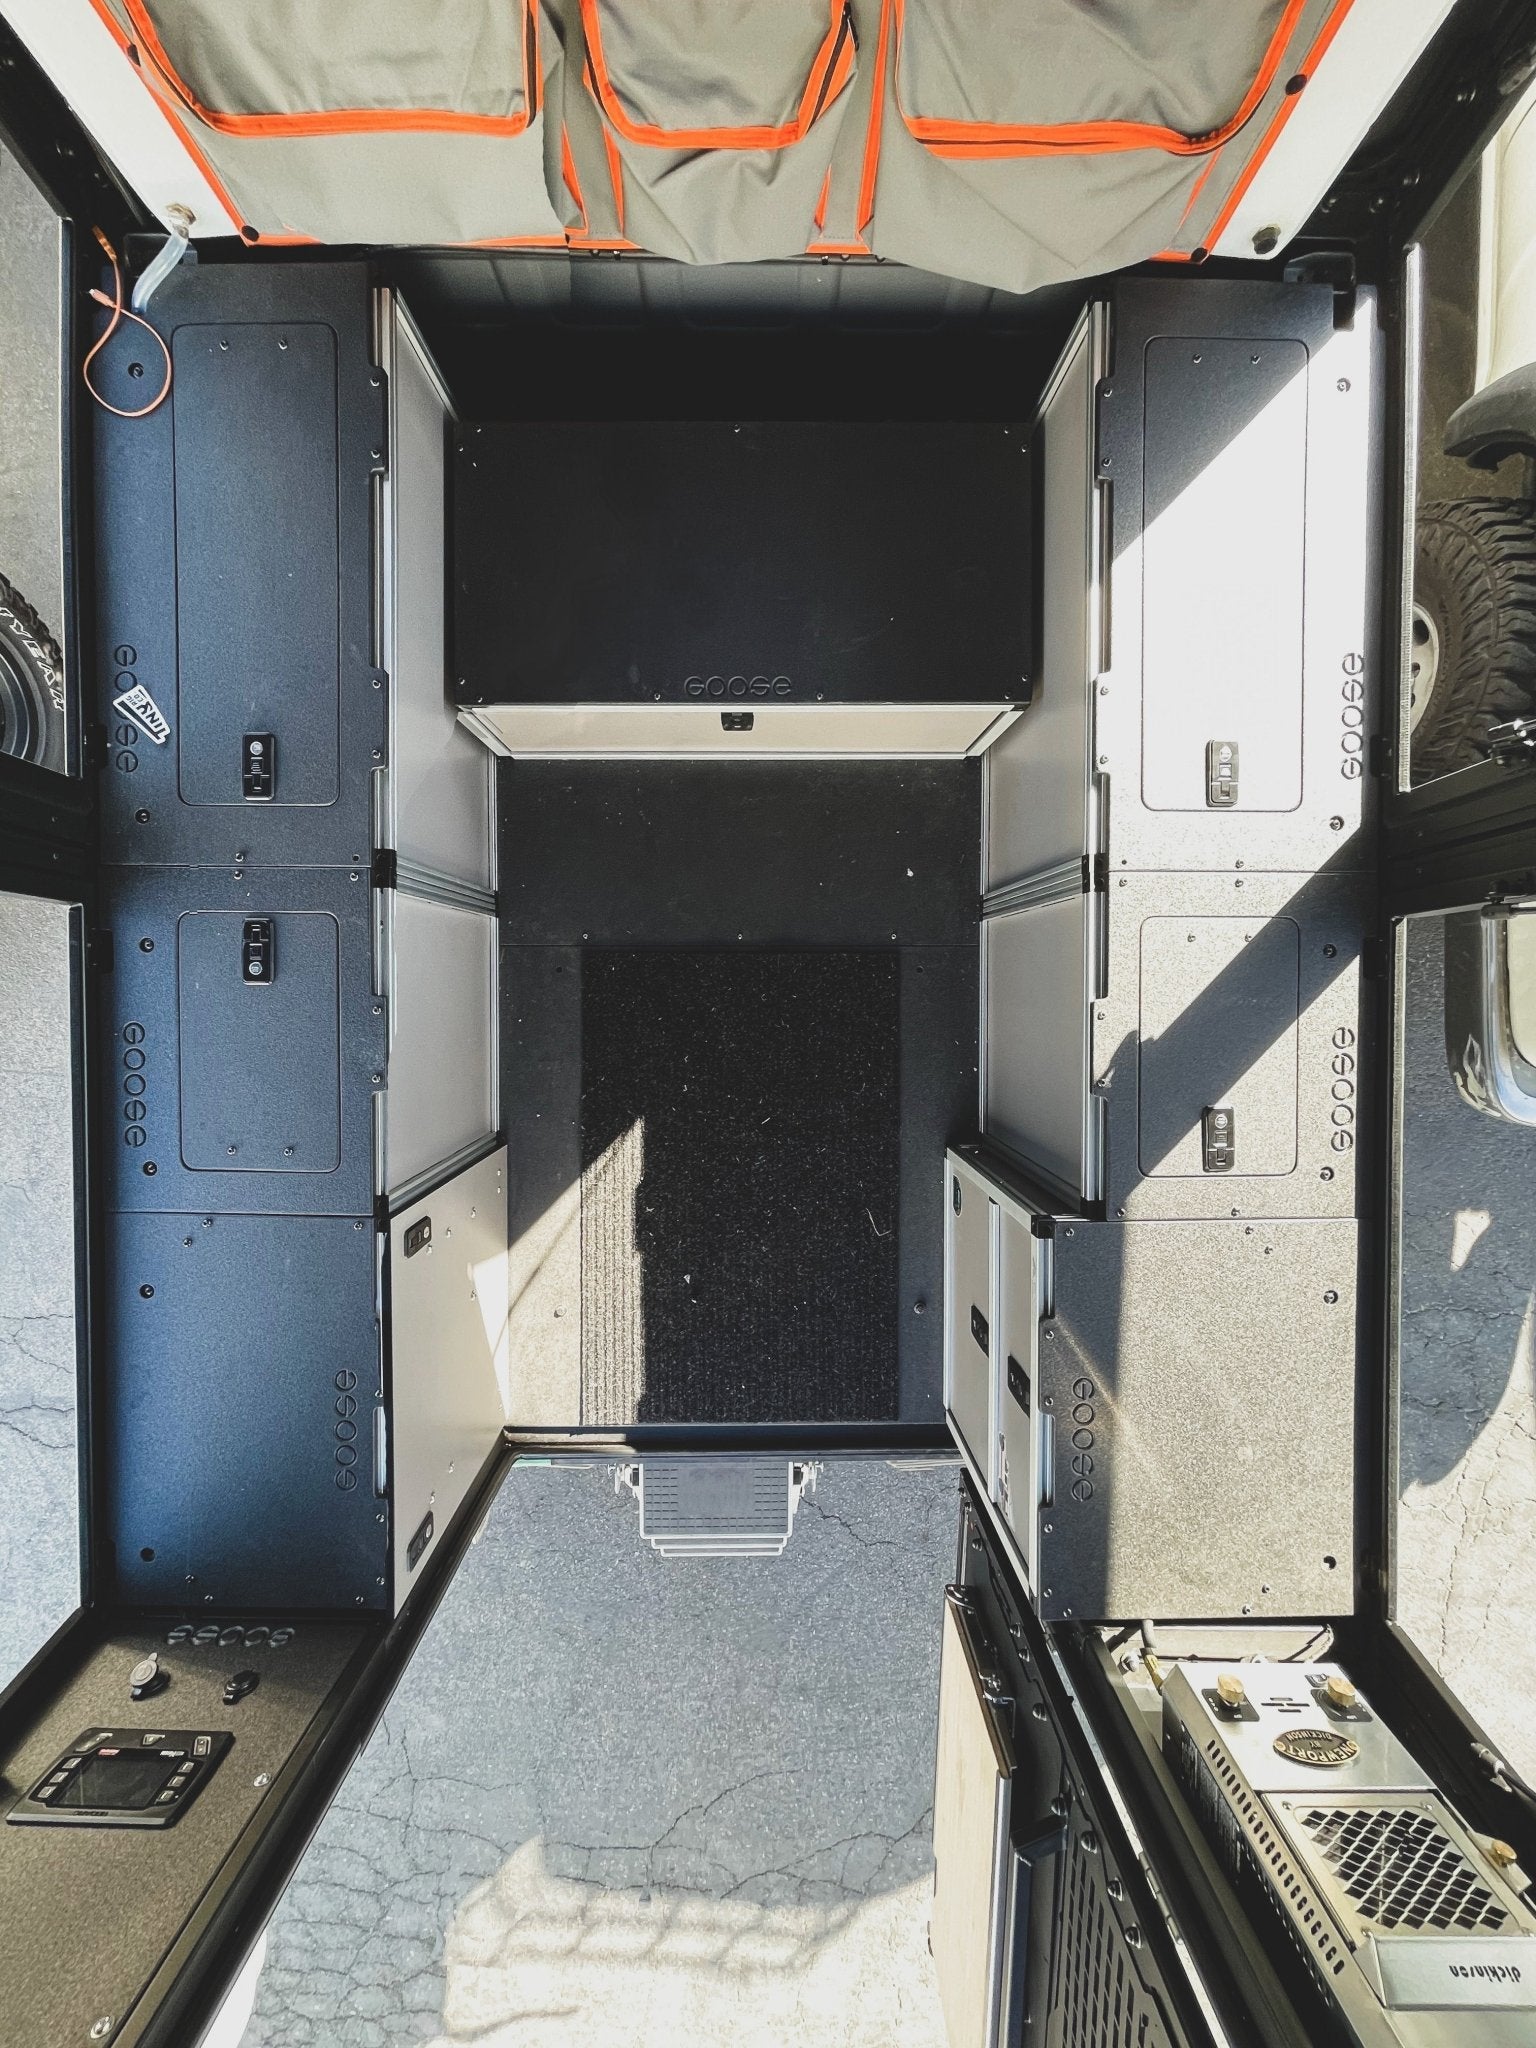 Goose Gear Alu-Cab Alu-Cabin Canopy Camper - Chevrolet Silverado 1500 / GMC Sierra 1500 2019-Present 4th Gen. - Rear Double Drawer Module